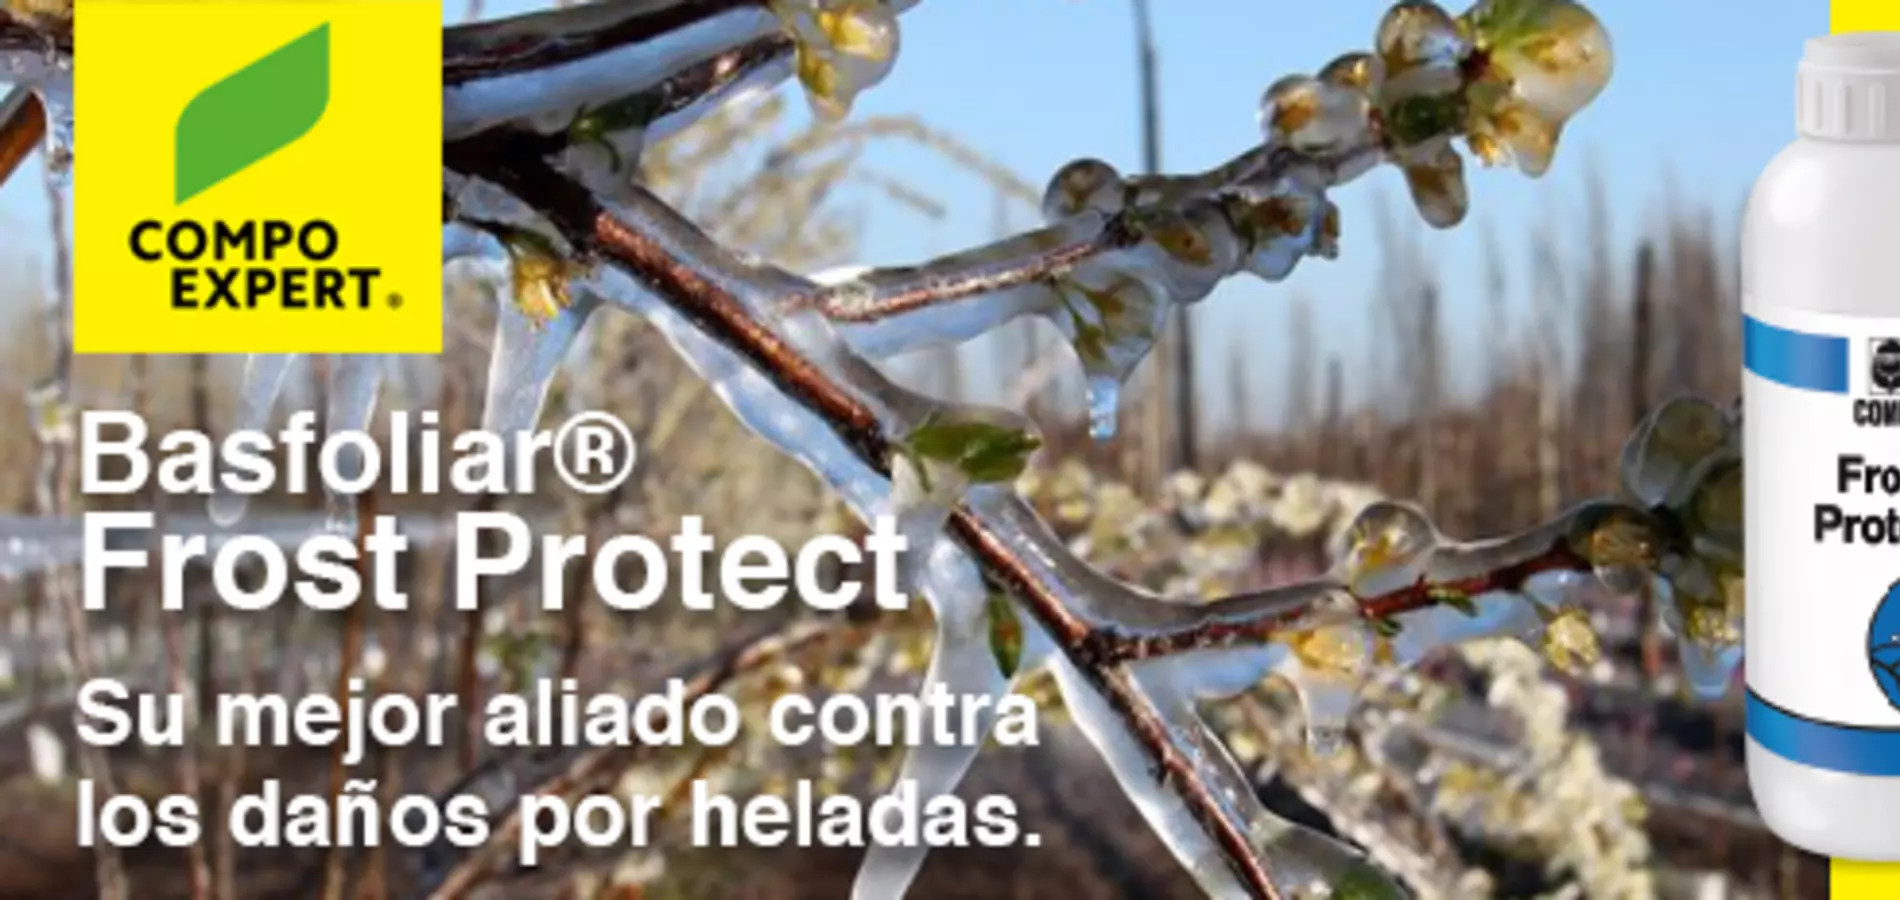 Basfoliar® Frost Protect es un bioestimulante creado para proteger los cultivos de las bajas temperaturas.